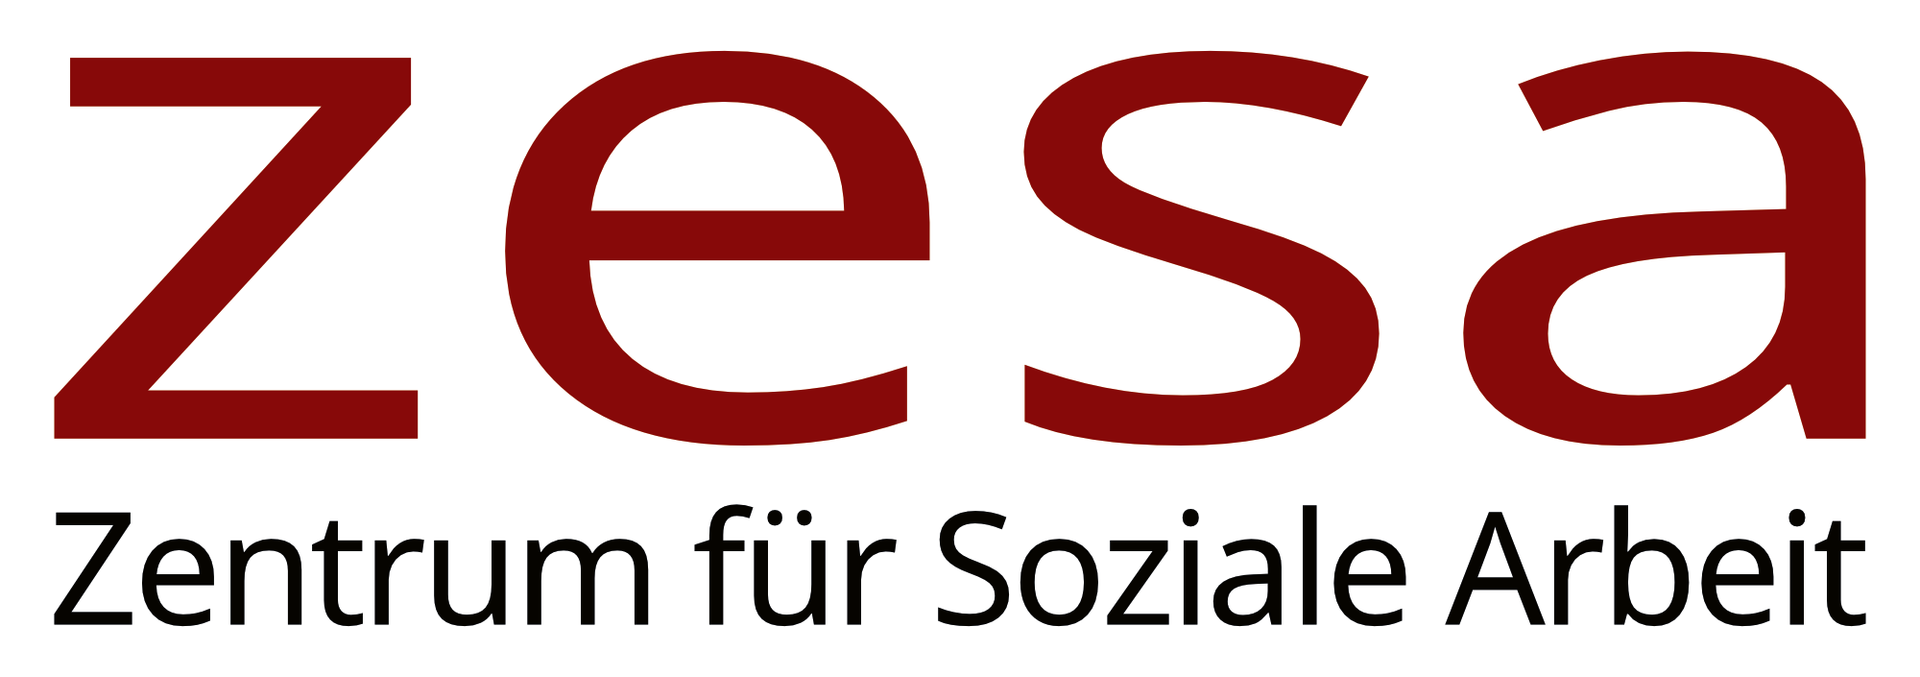 zesa - Zentrum für Soziale Arbeit Logo